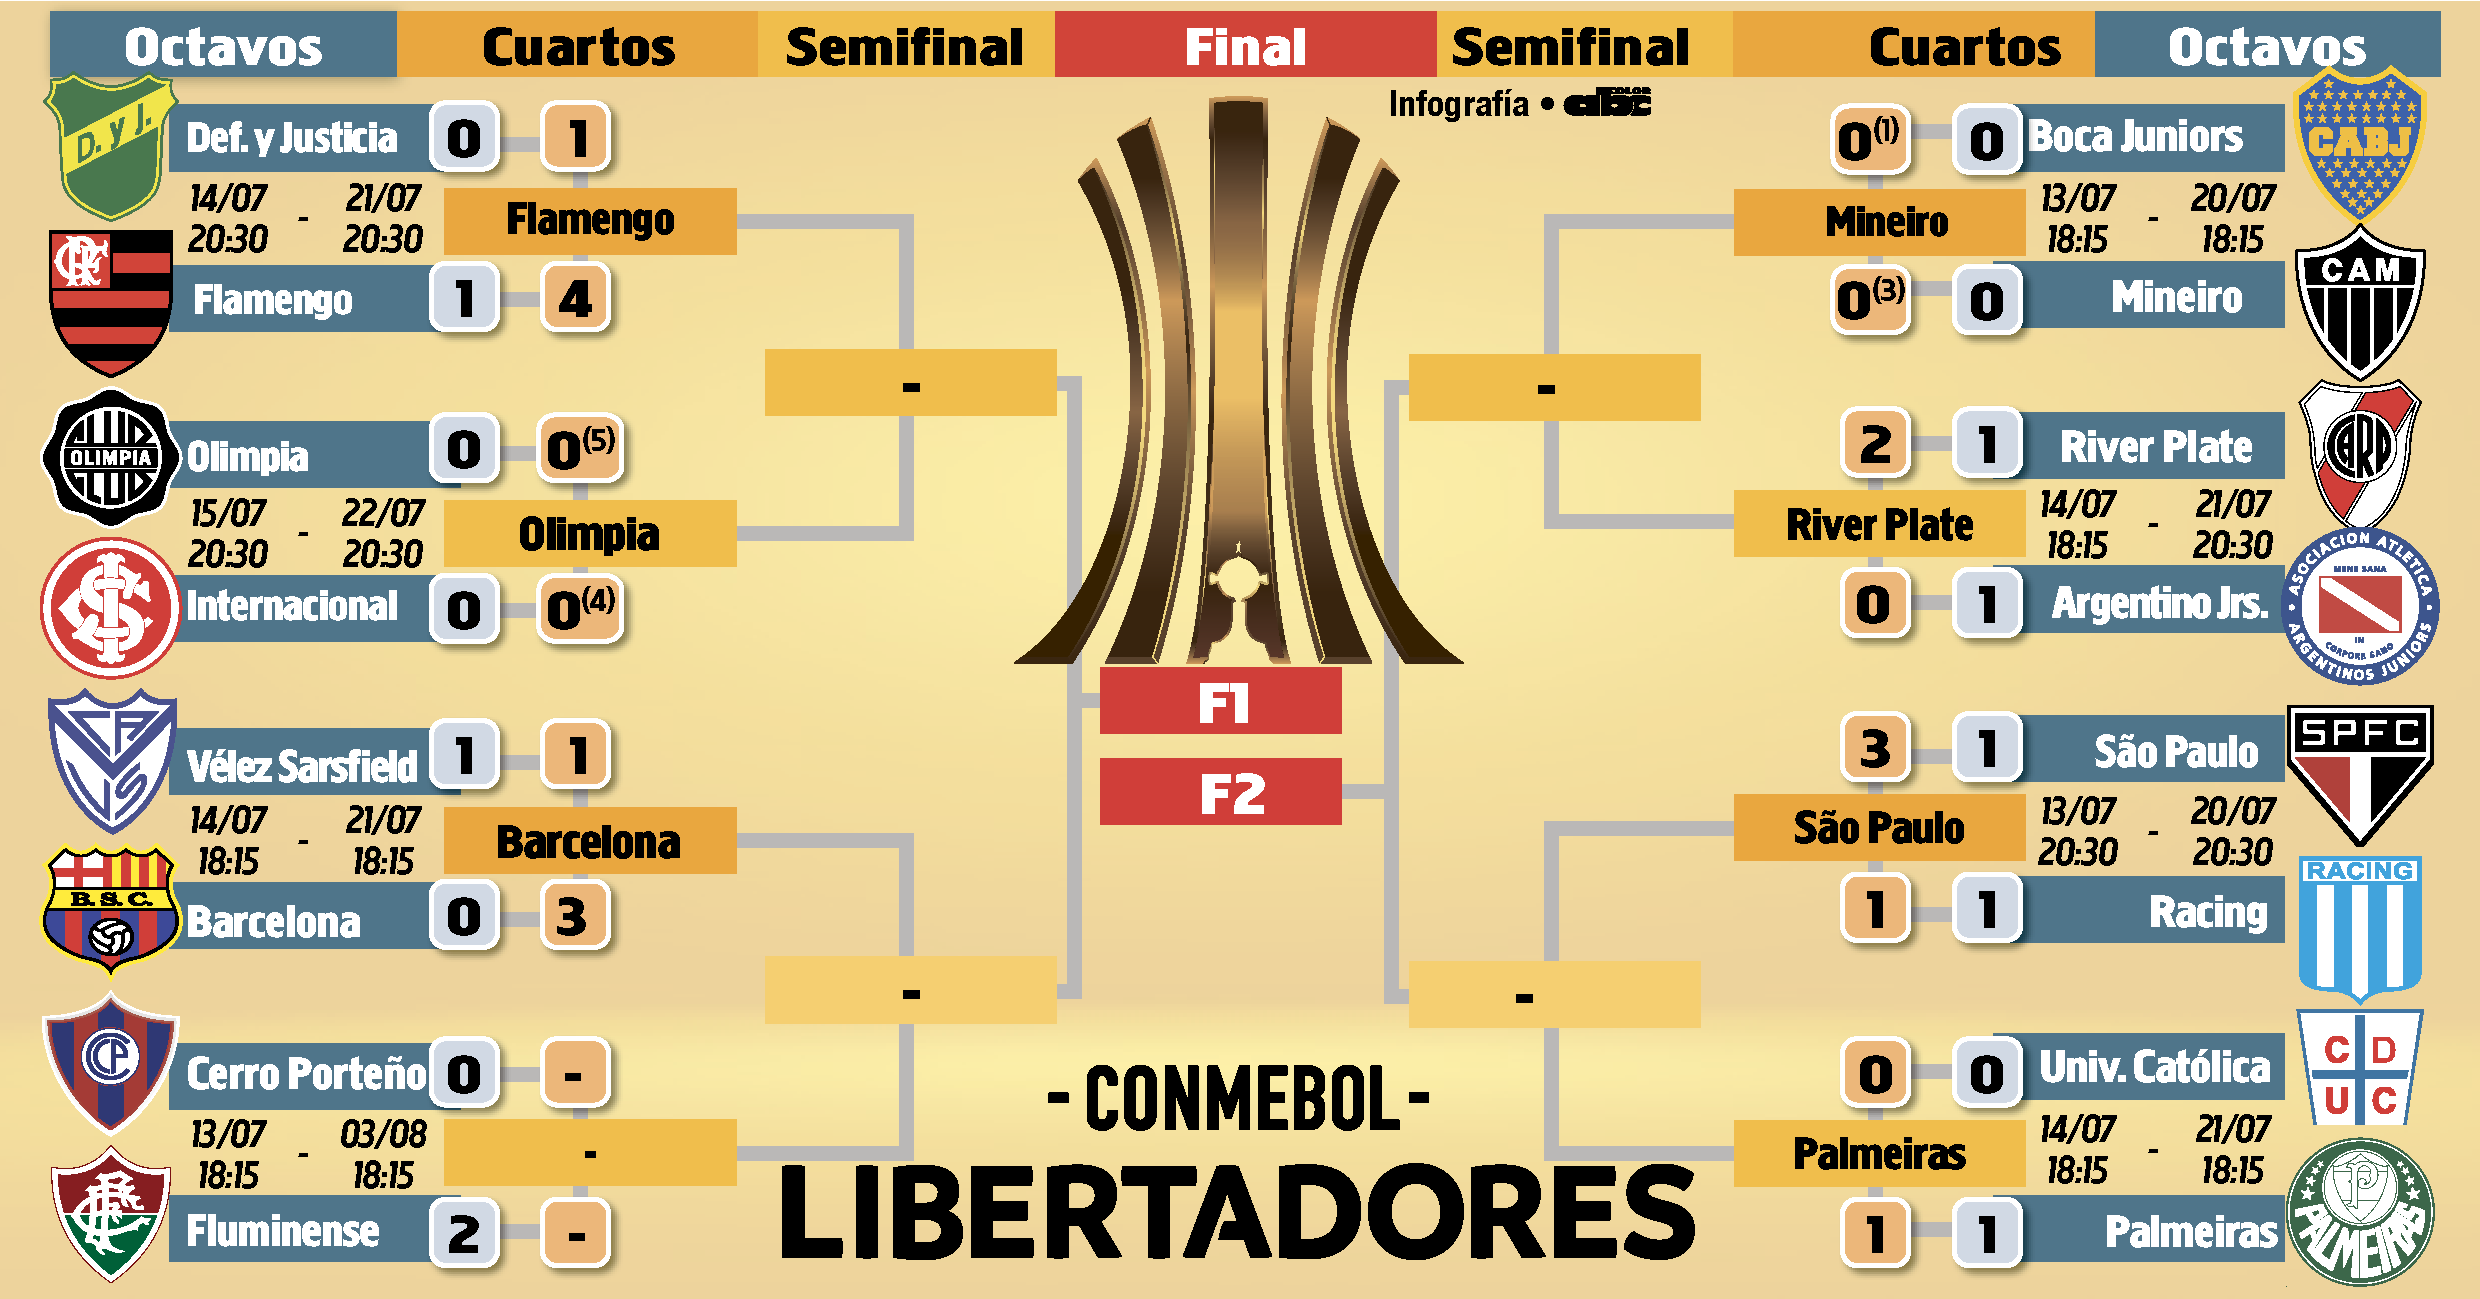 Fixture octavos de final Copa Libertadores